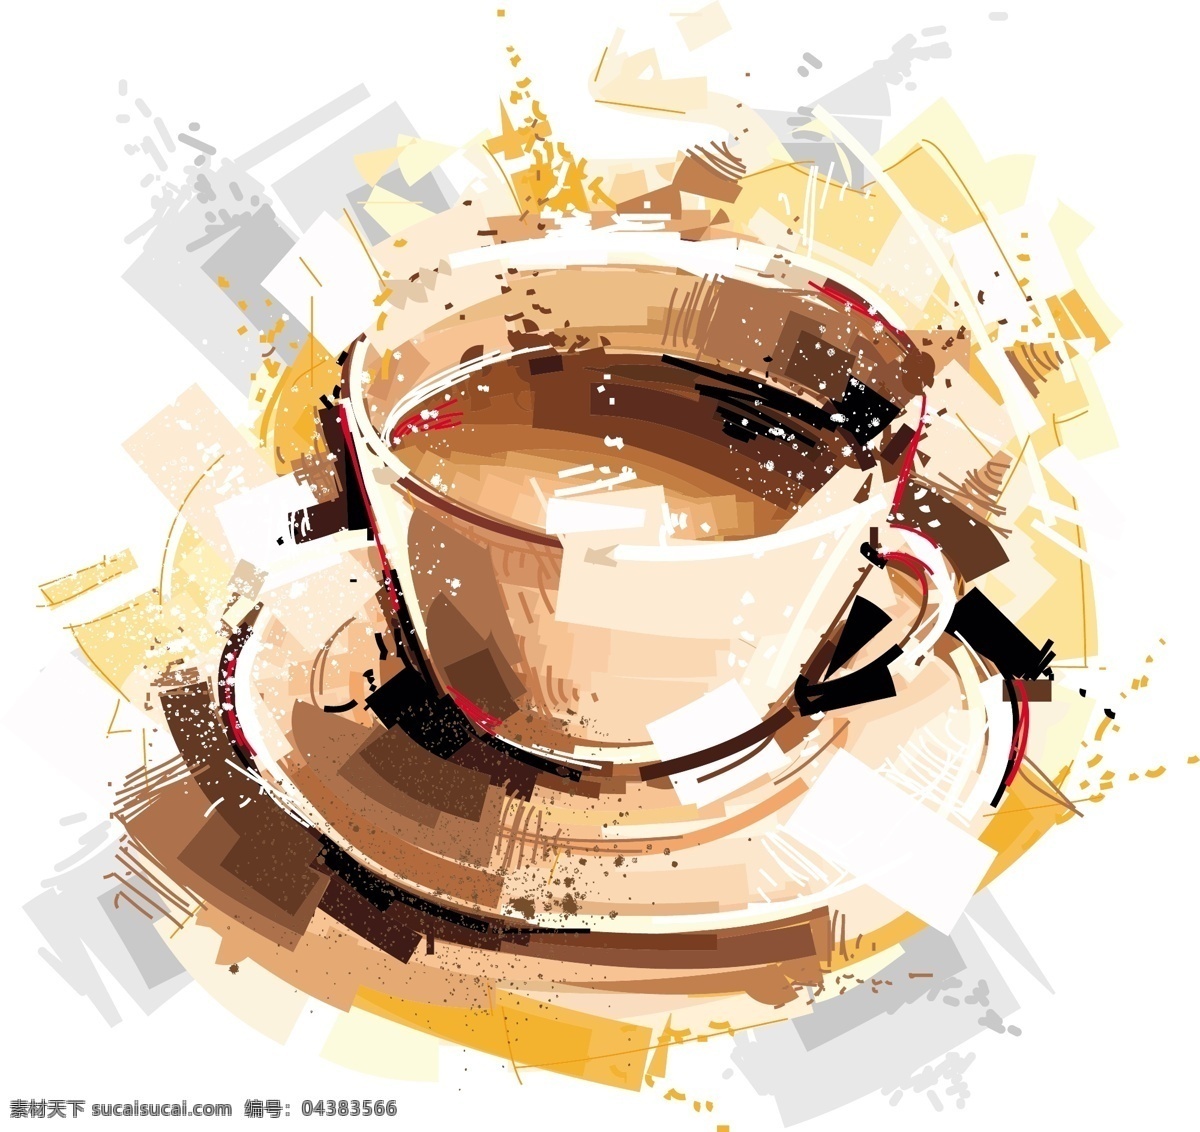 咖啡 杯子 现代 个性 涂鸦 矢量 创意 水彩 欧式 素描 手绘 广告 背景